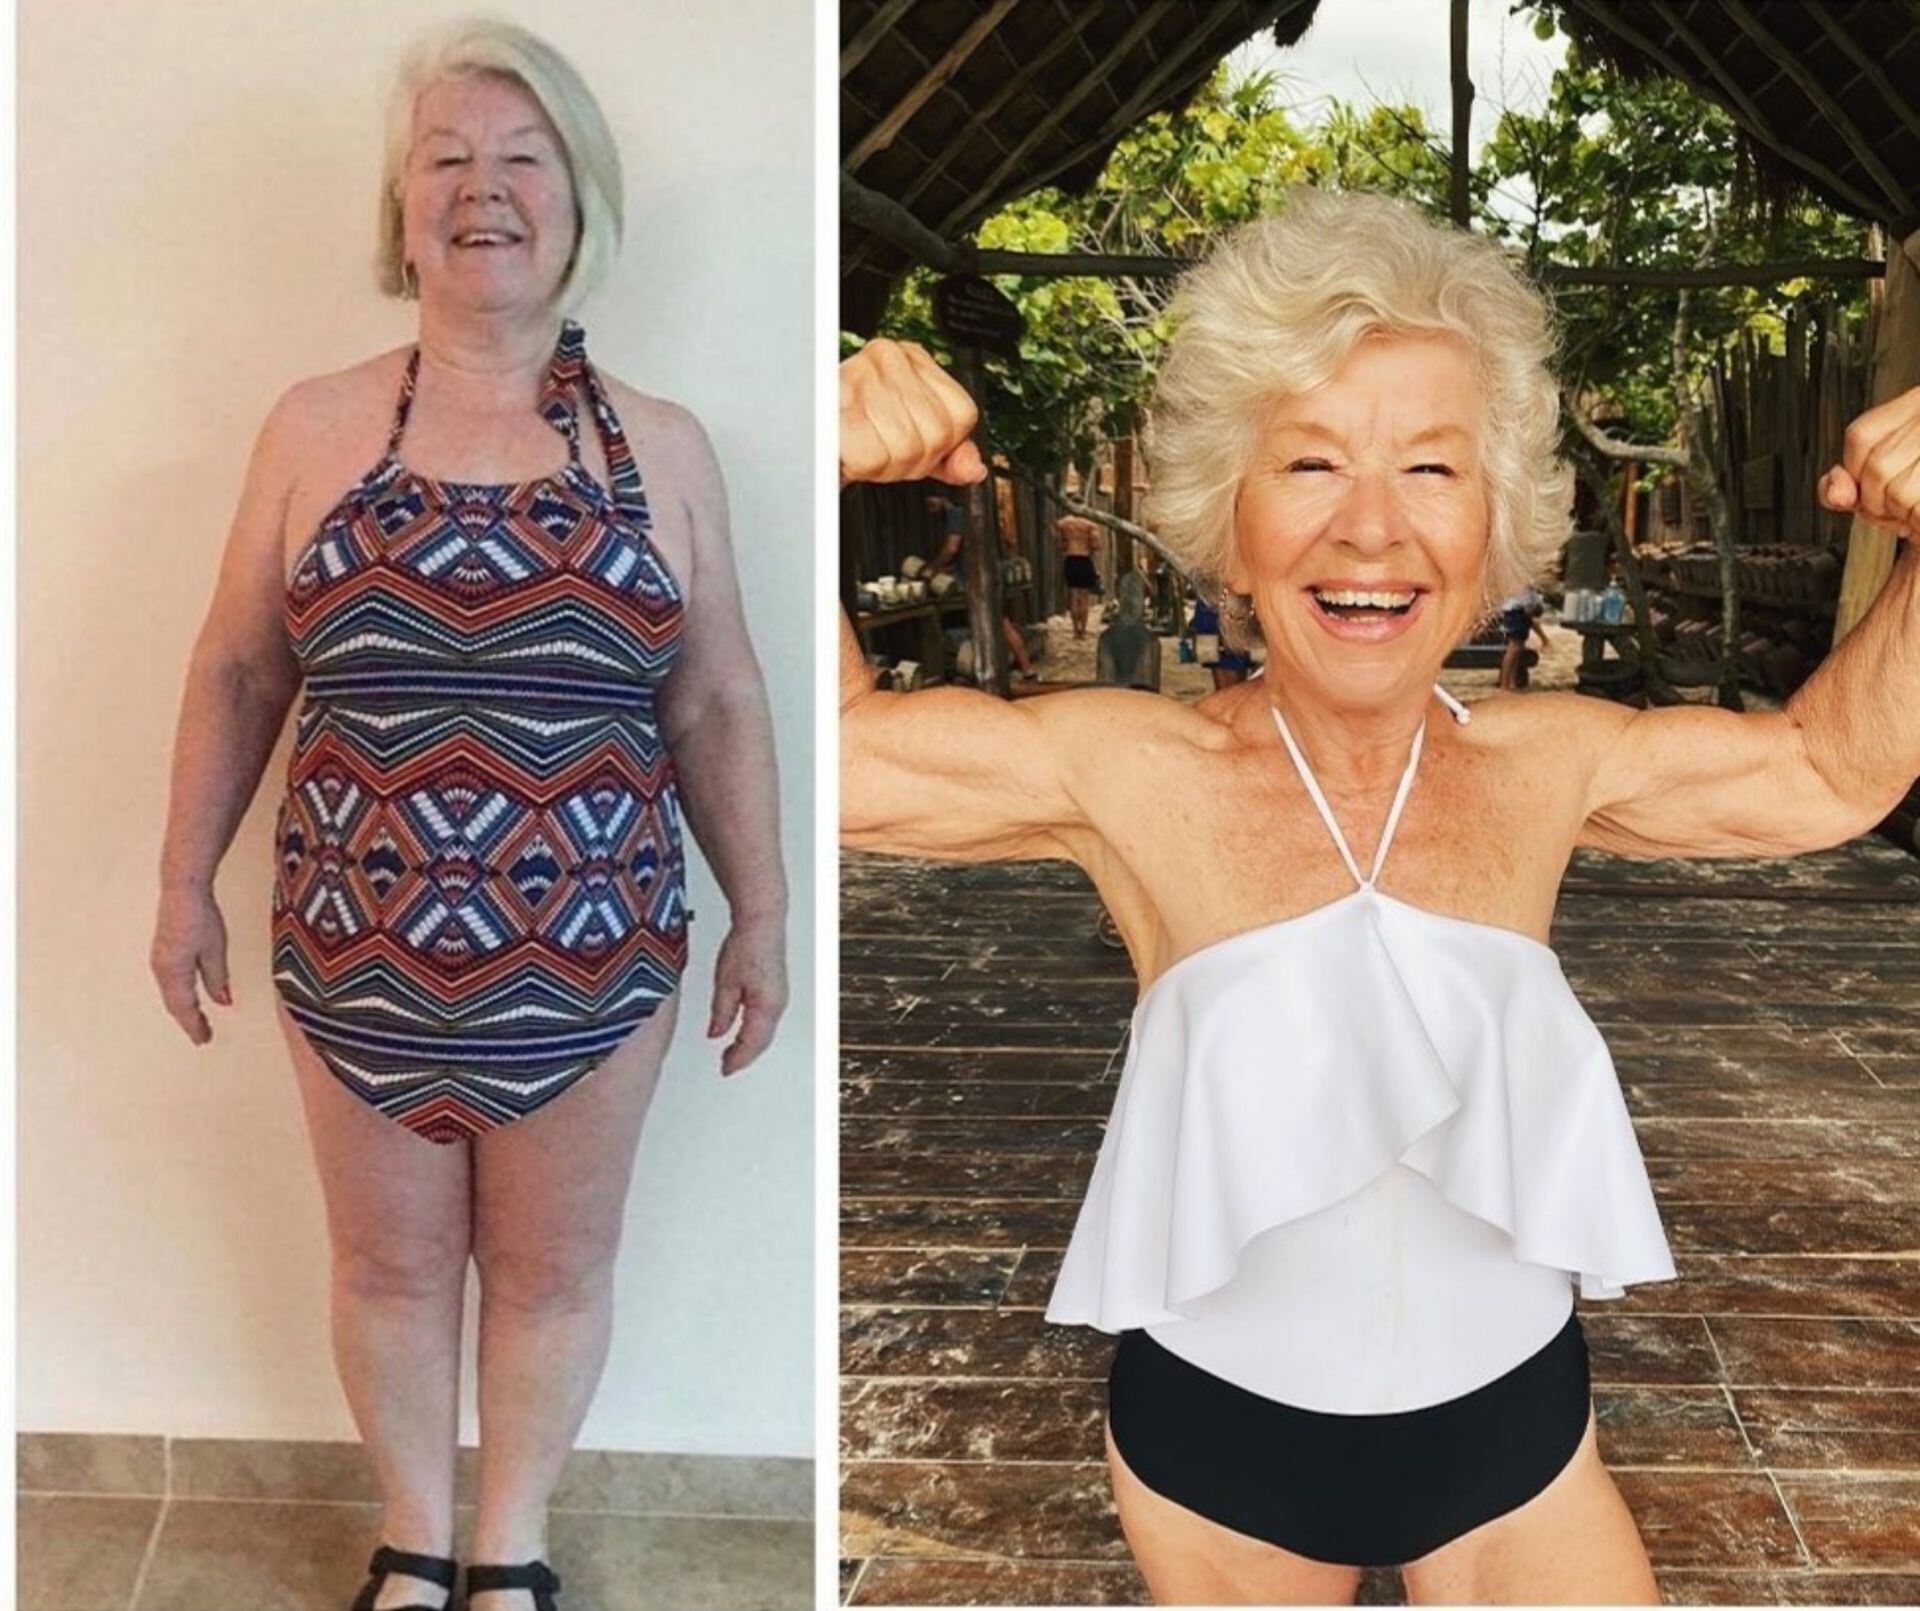 El antes y el después: "Lo hice por mi salud y para poder intentar disfrutar de mis últimos años en esta tierra feliz y lleno de energía".